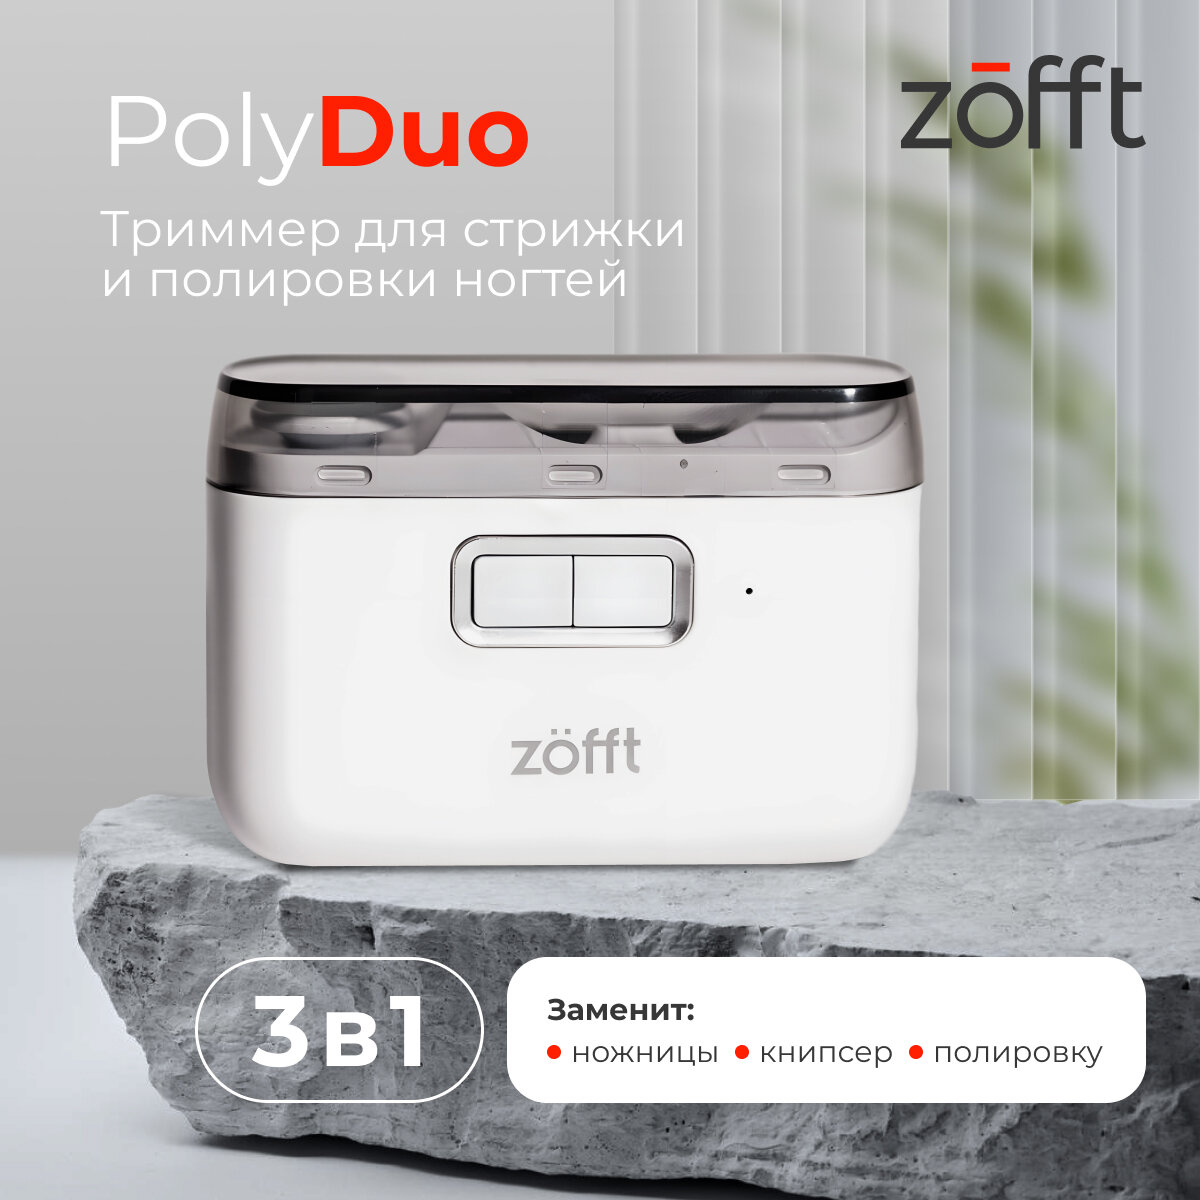 Машинка для стрижки ногтей Zofft Poly Duo